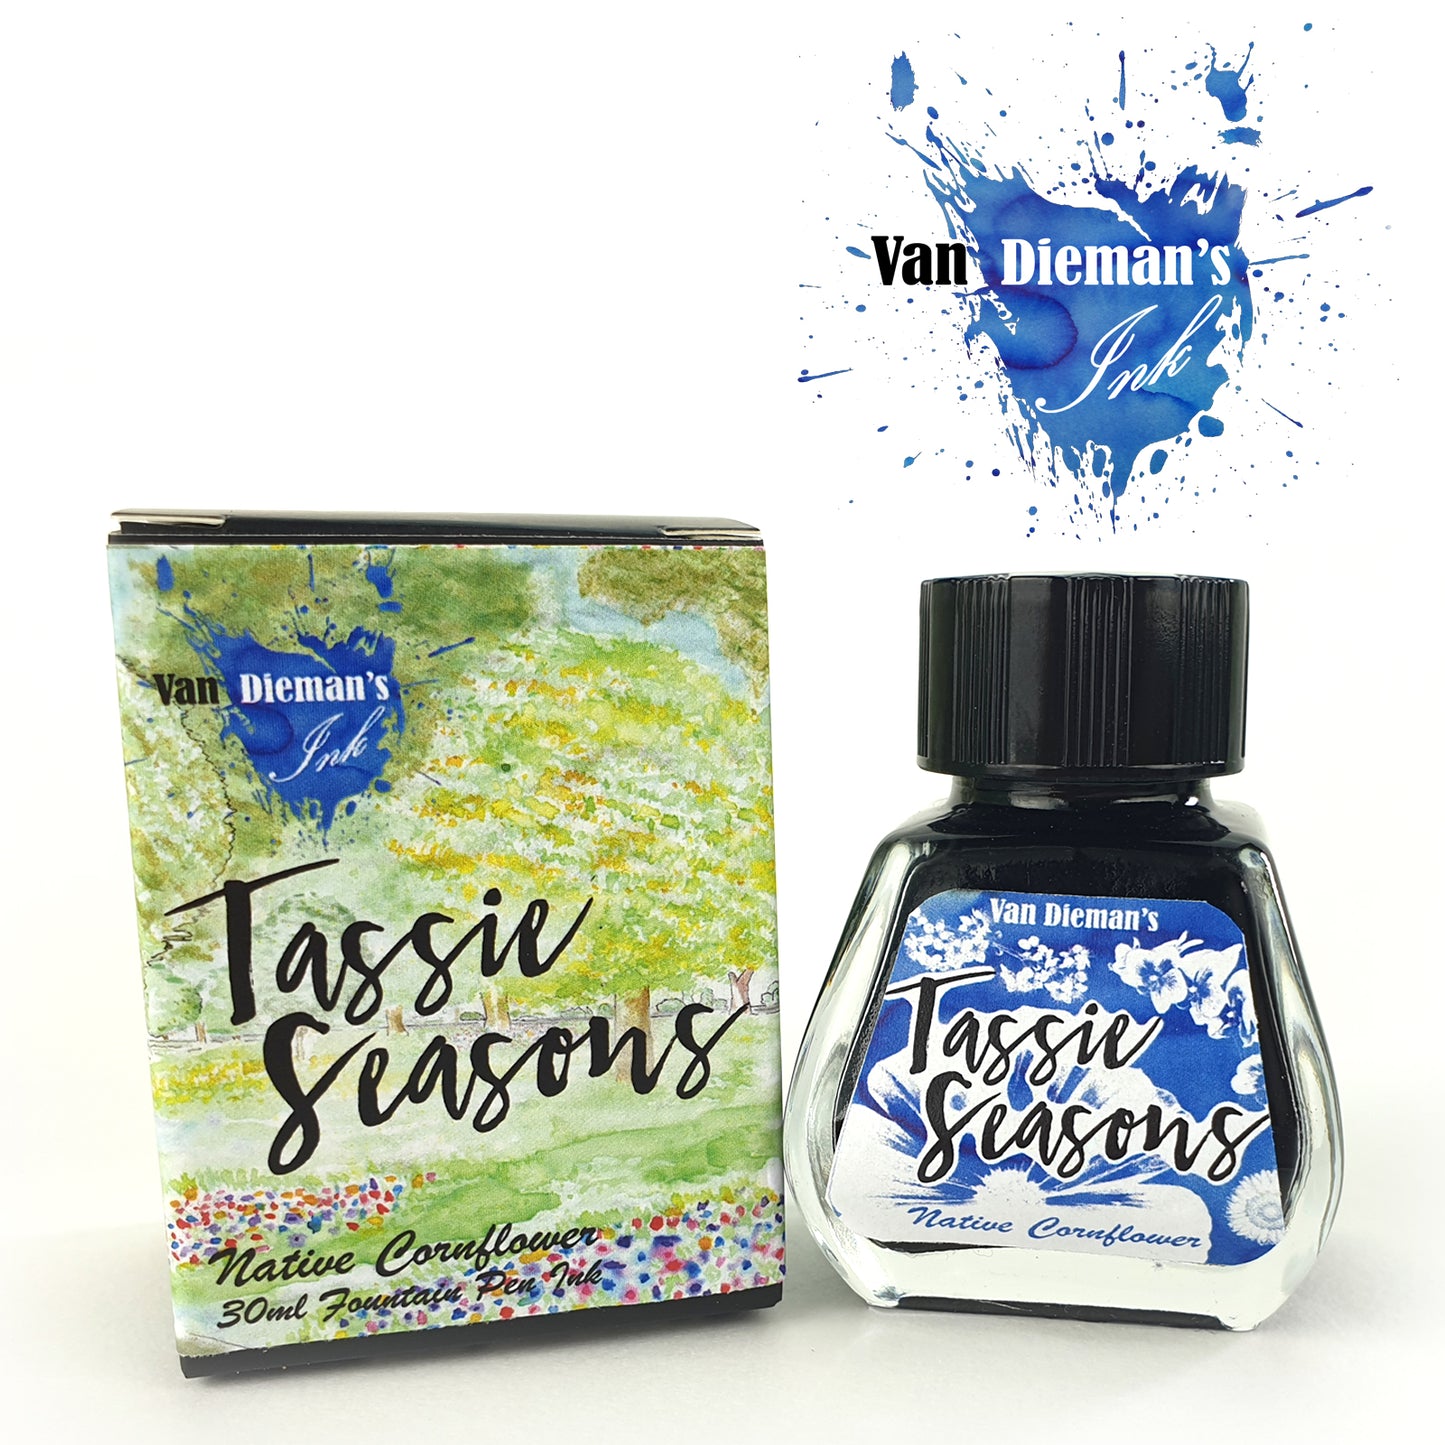 Van Dieman's Tassie Seasons (Spring) Native Cornflower - Fountain Pen Ink